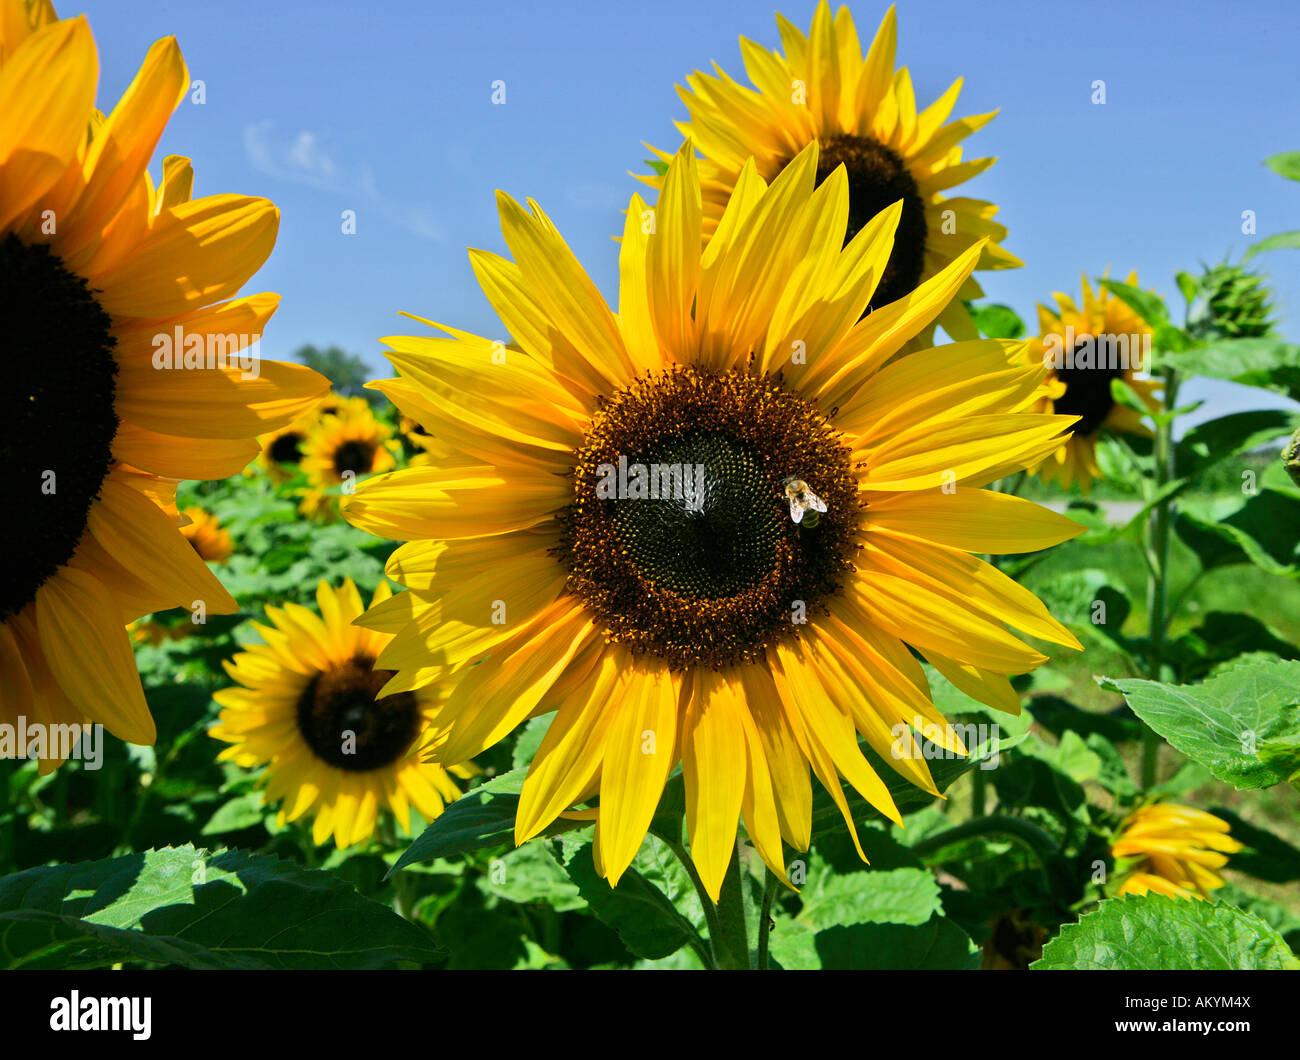 Bee on sunflower (Helianthus annuus) Stock Photo